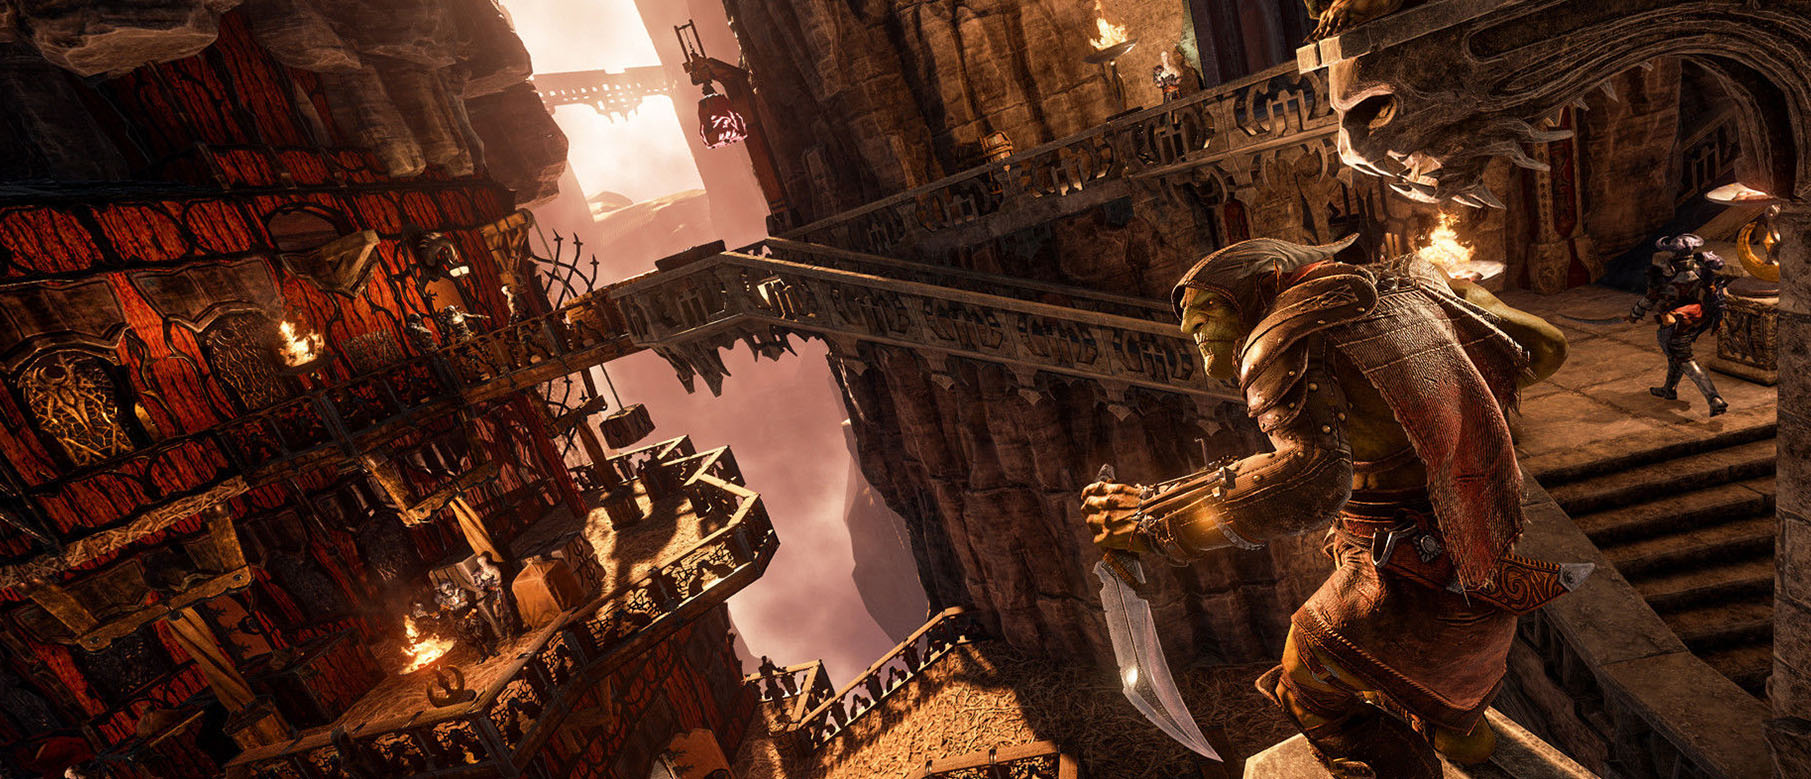 Изображение к Стикс проникает в Эльфийскую крепость в новом геймплее Styx: Shards of Darkness